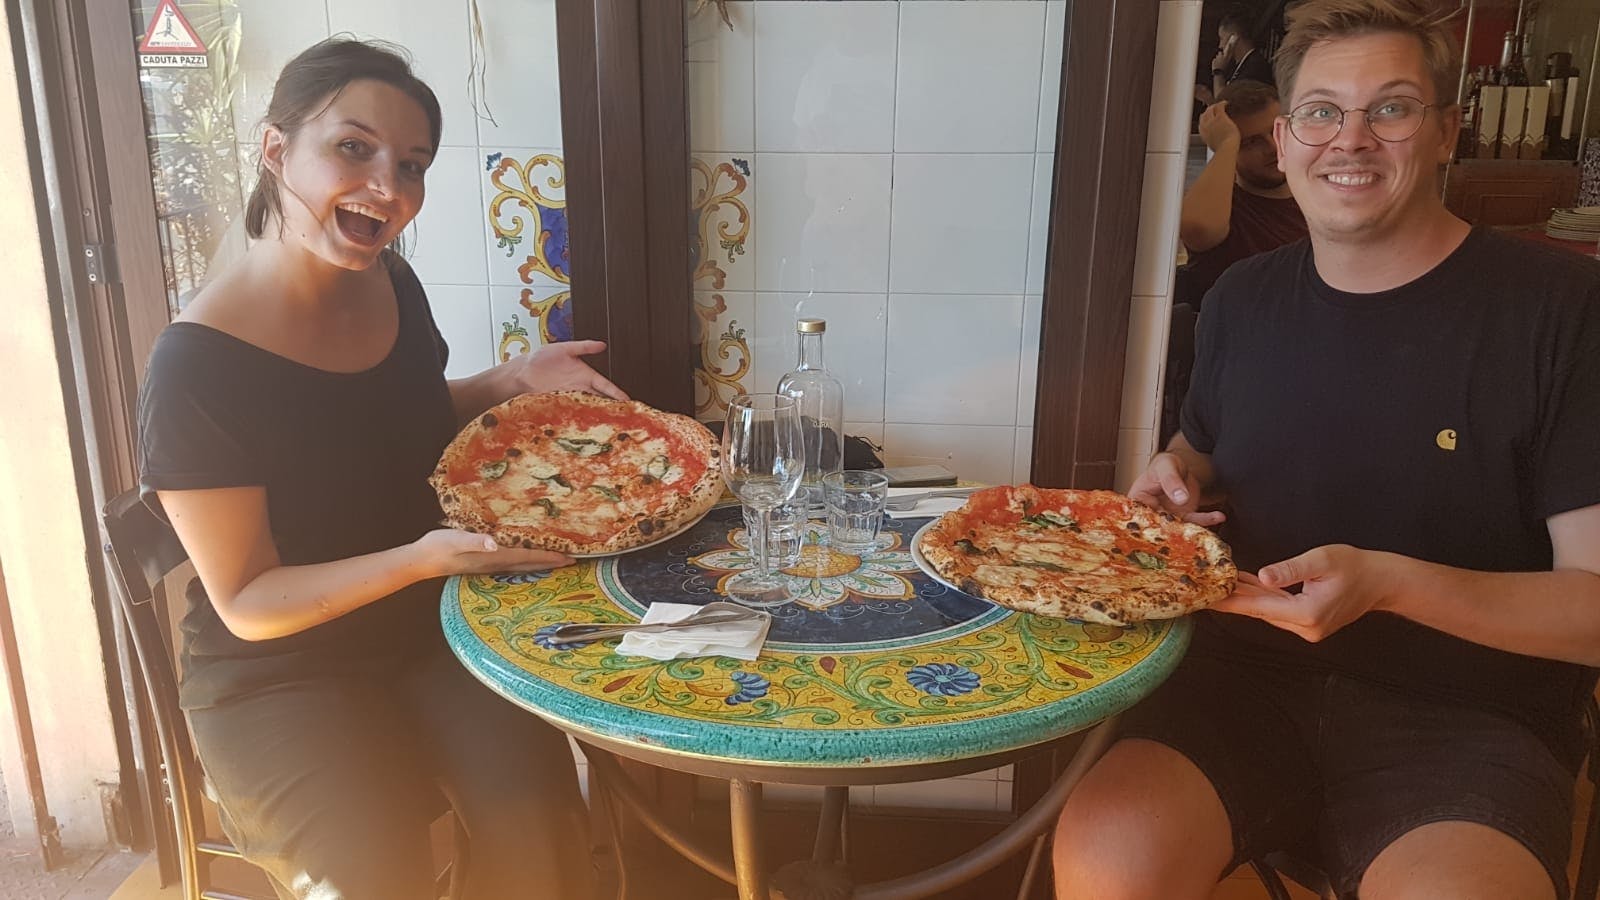 Laboratorio di pizza a Napoli